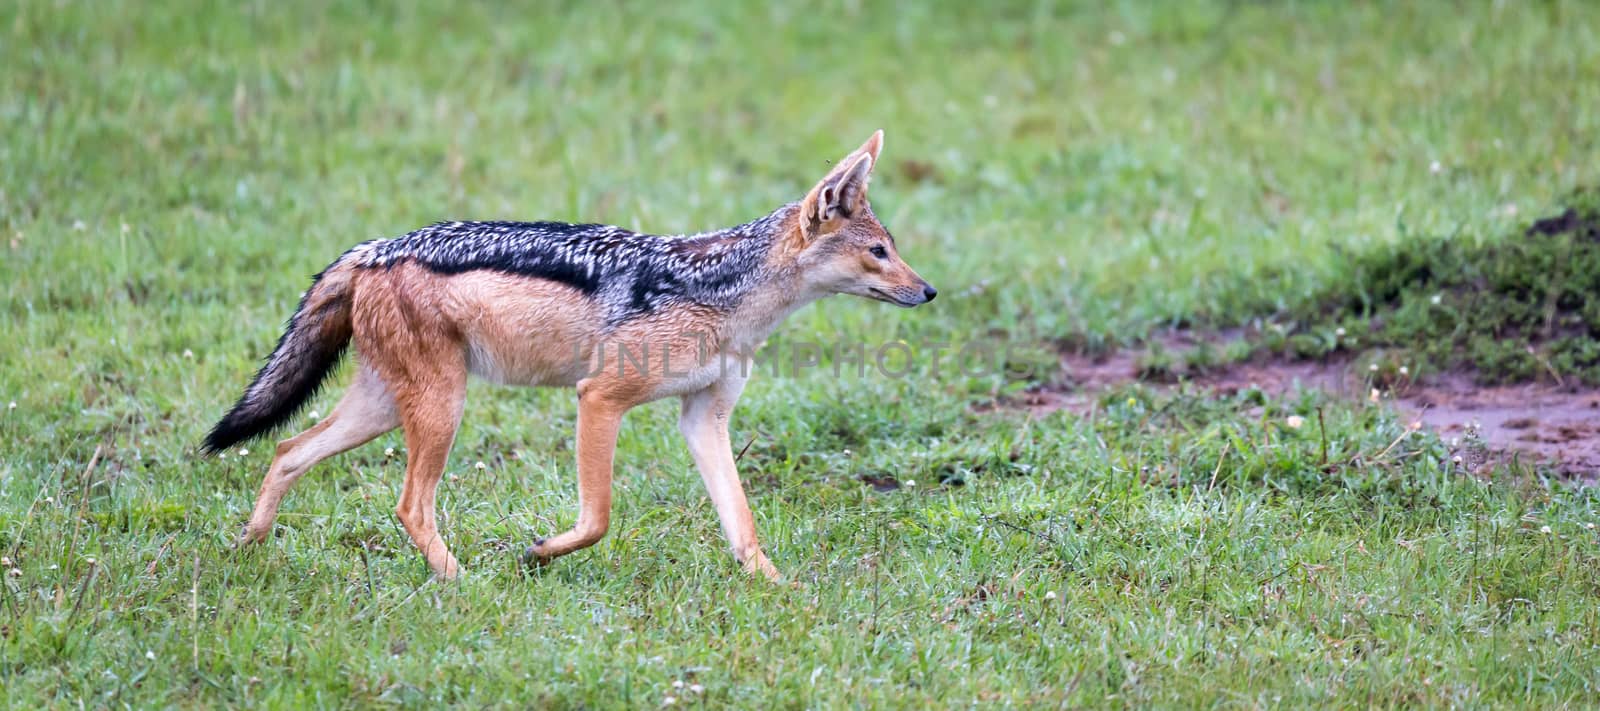 A jackal in the savannah of Kenya by 25ehaag6